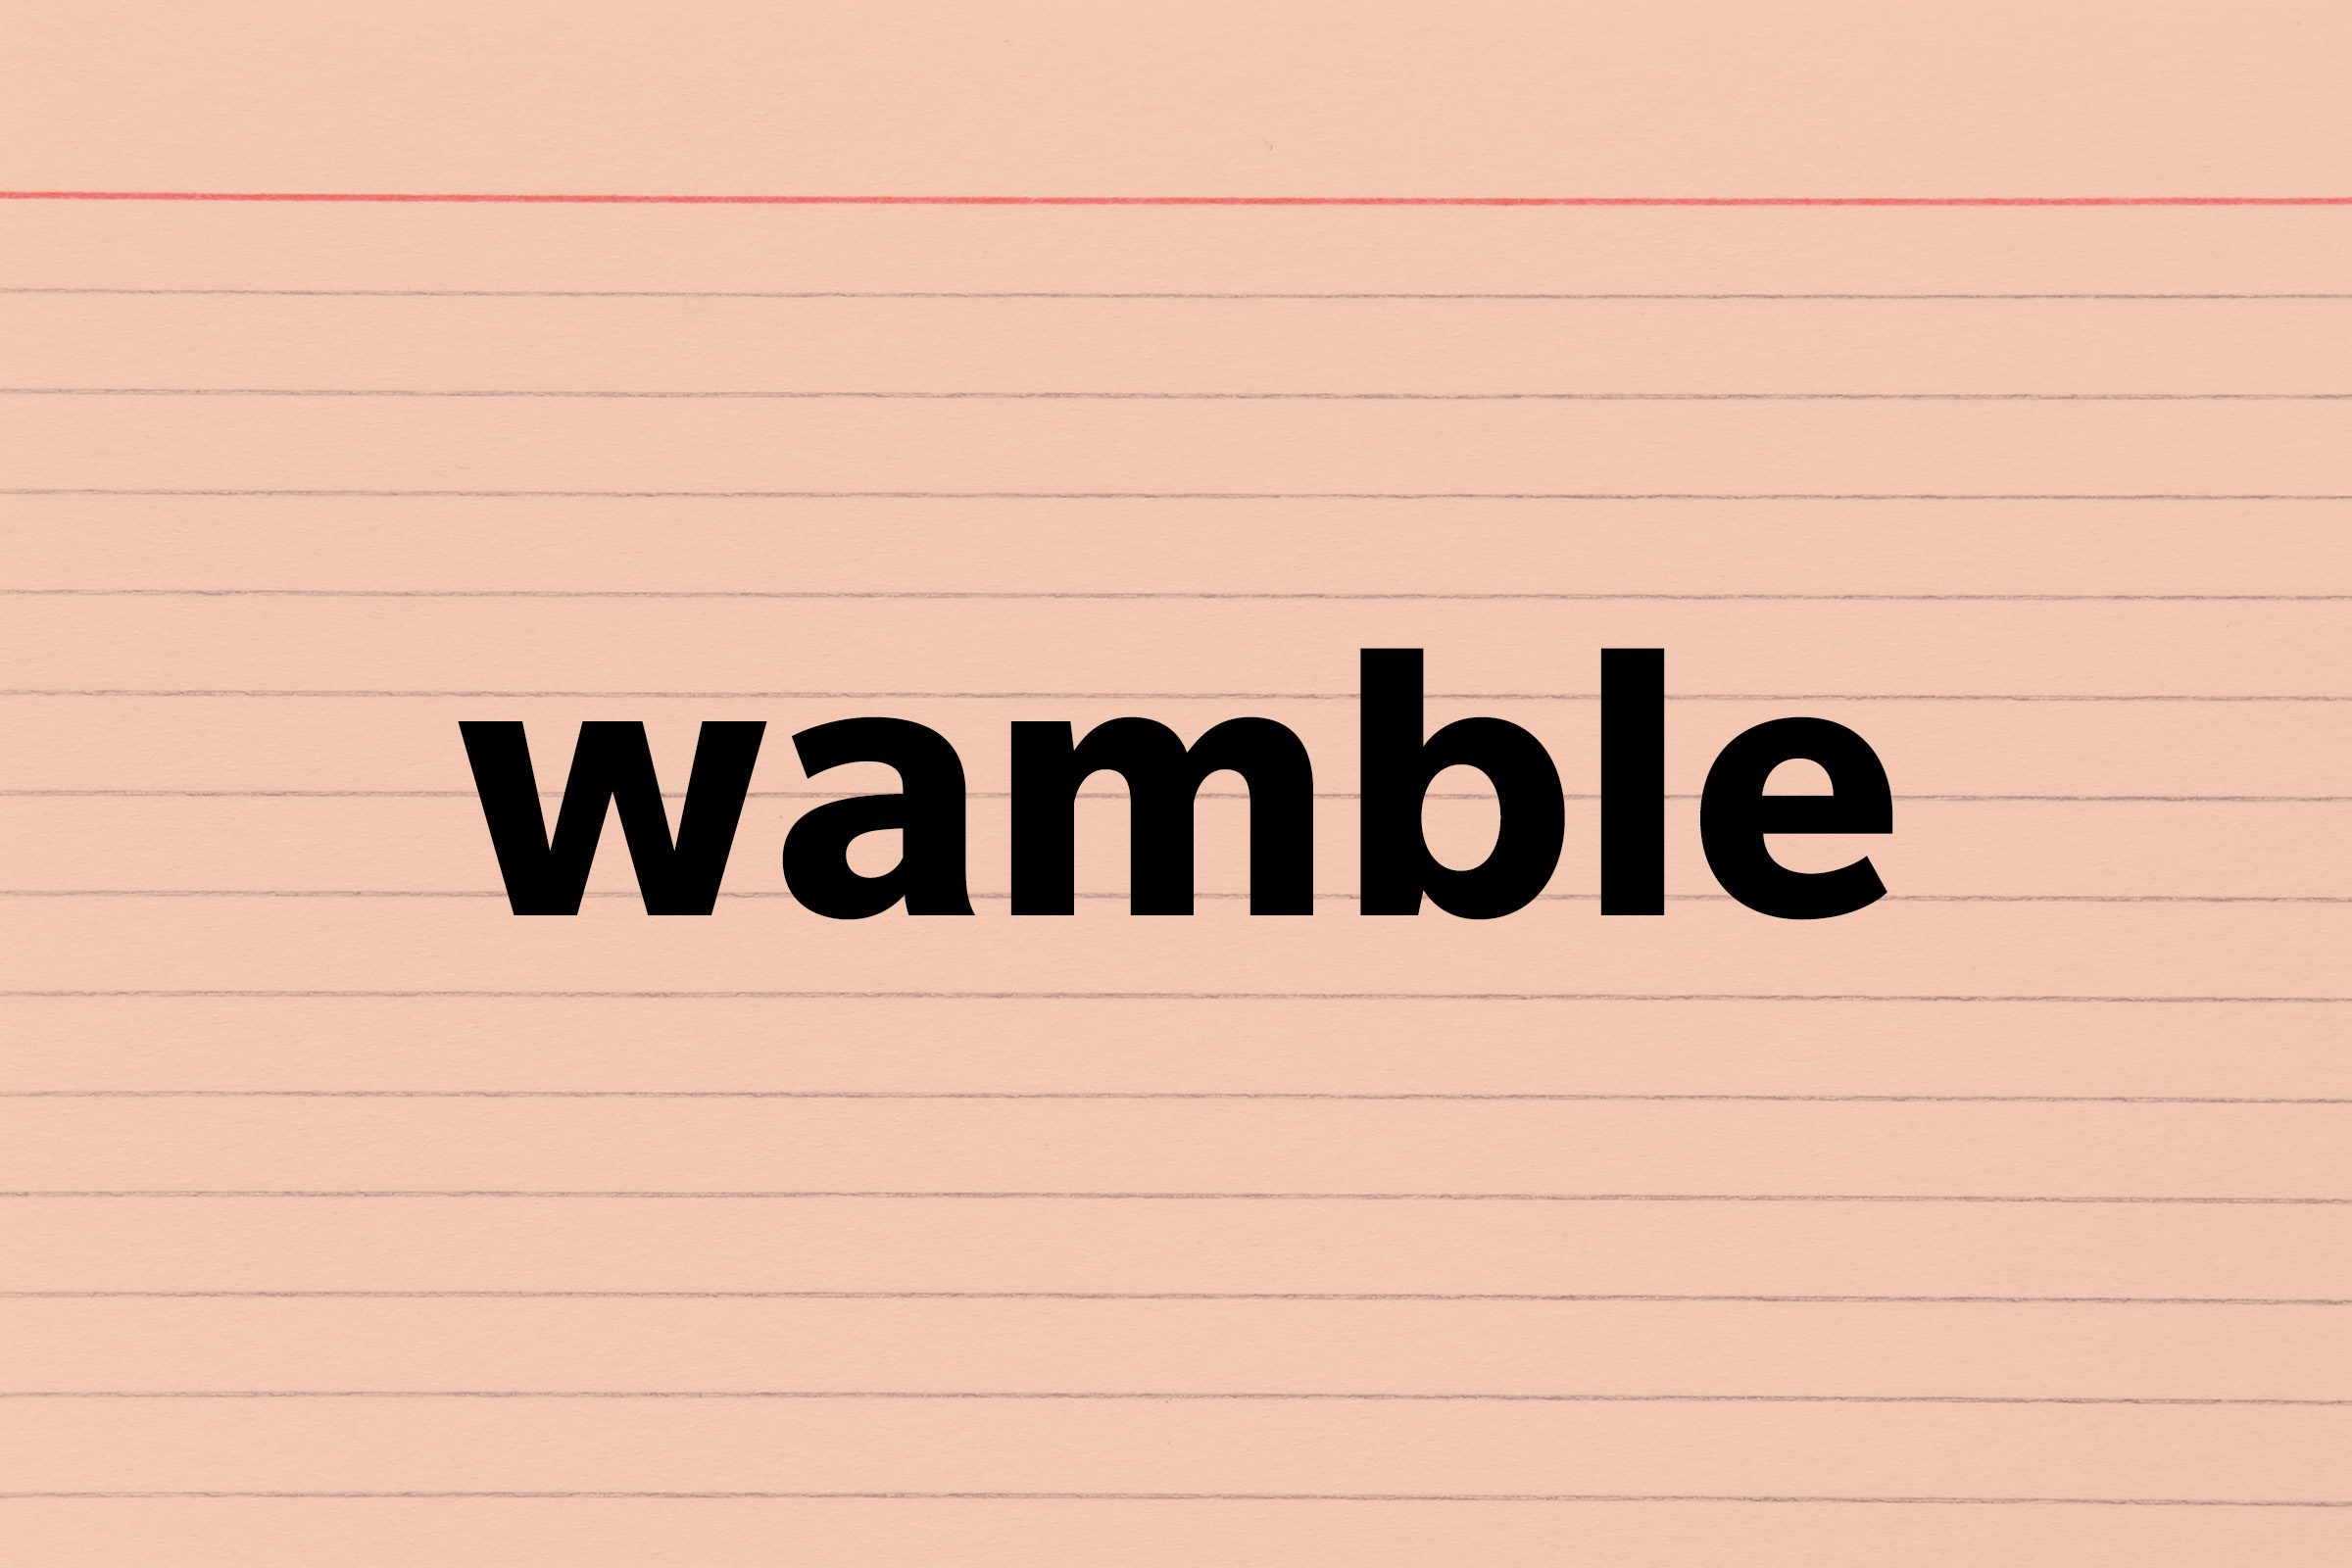 Wamble